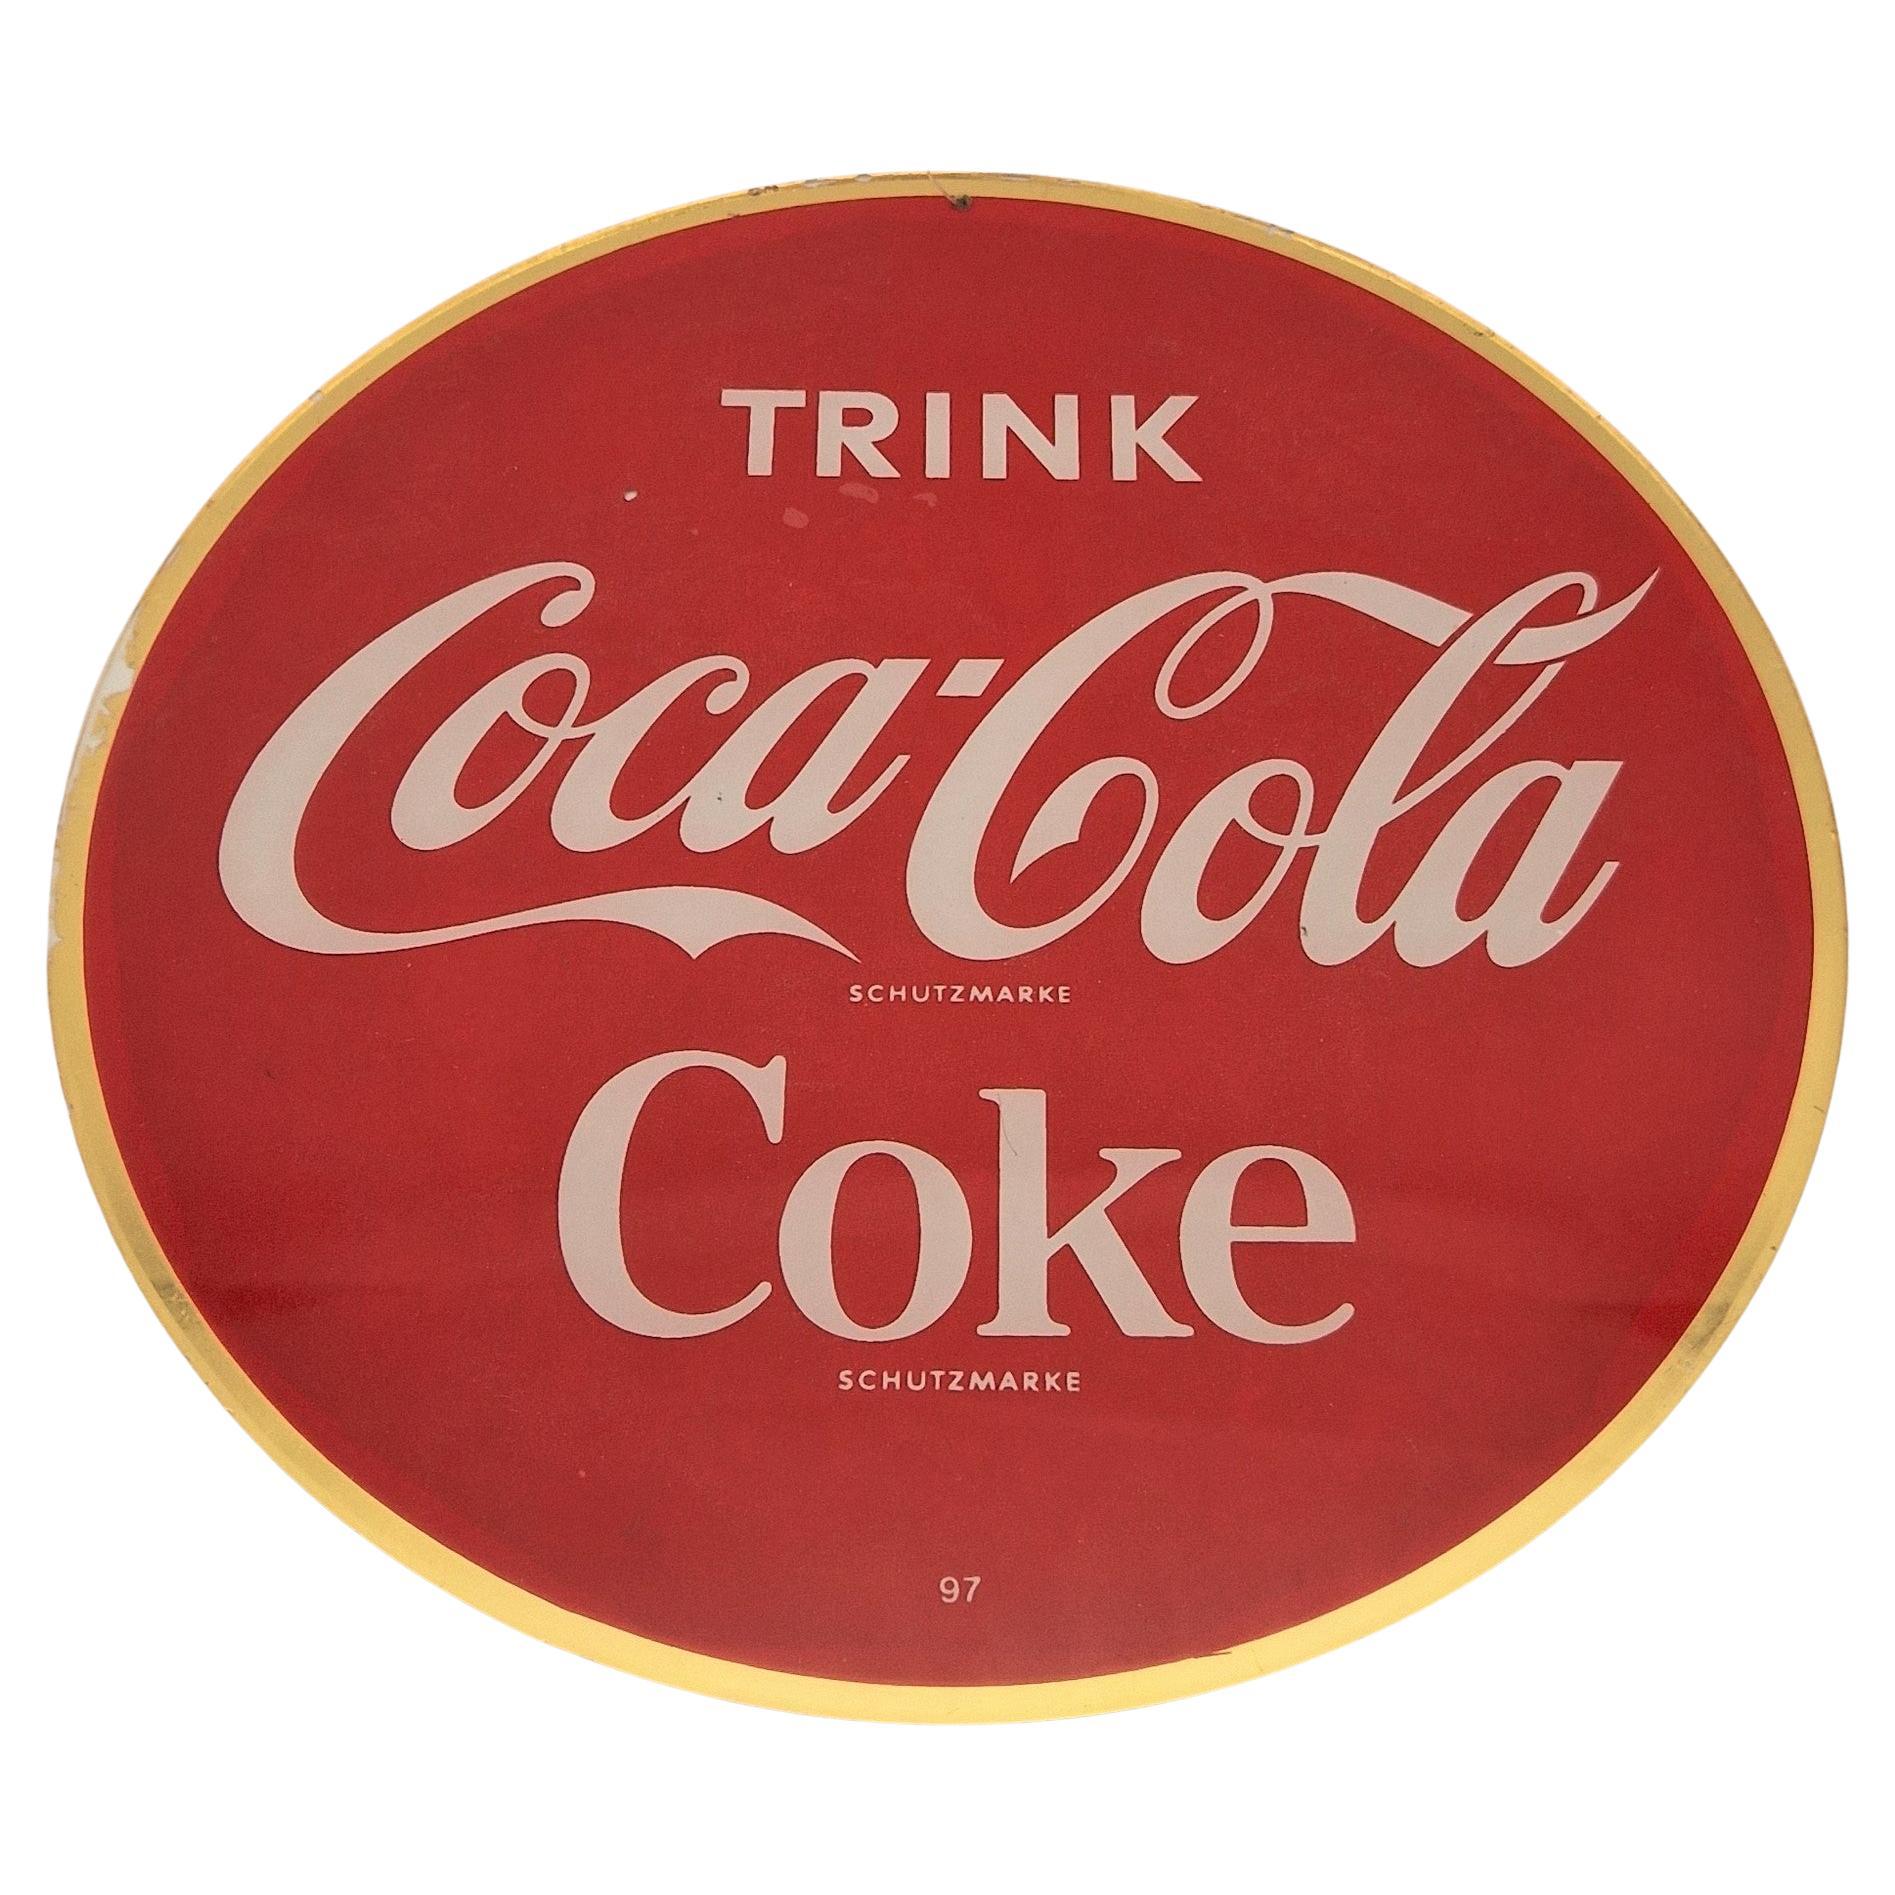 Panneau publicitaire en verre « Drink Coca Cola - Coke », 1950 - 1959